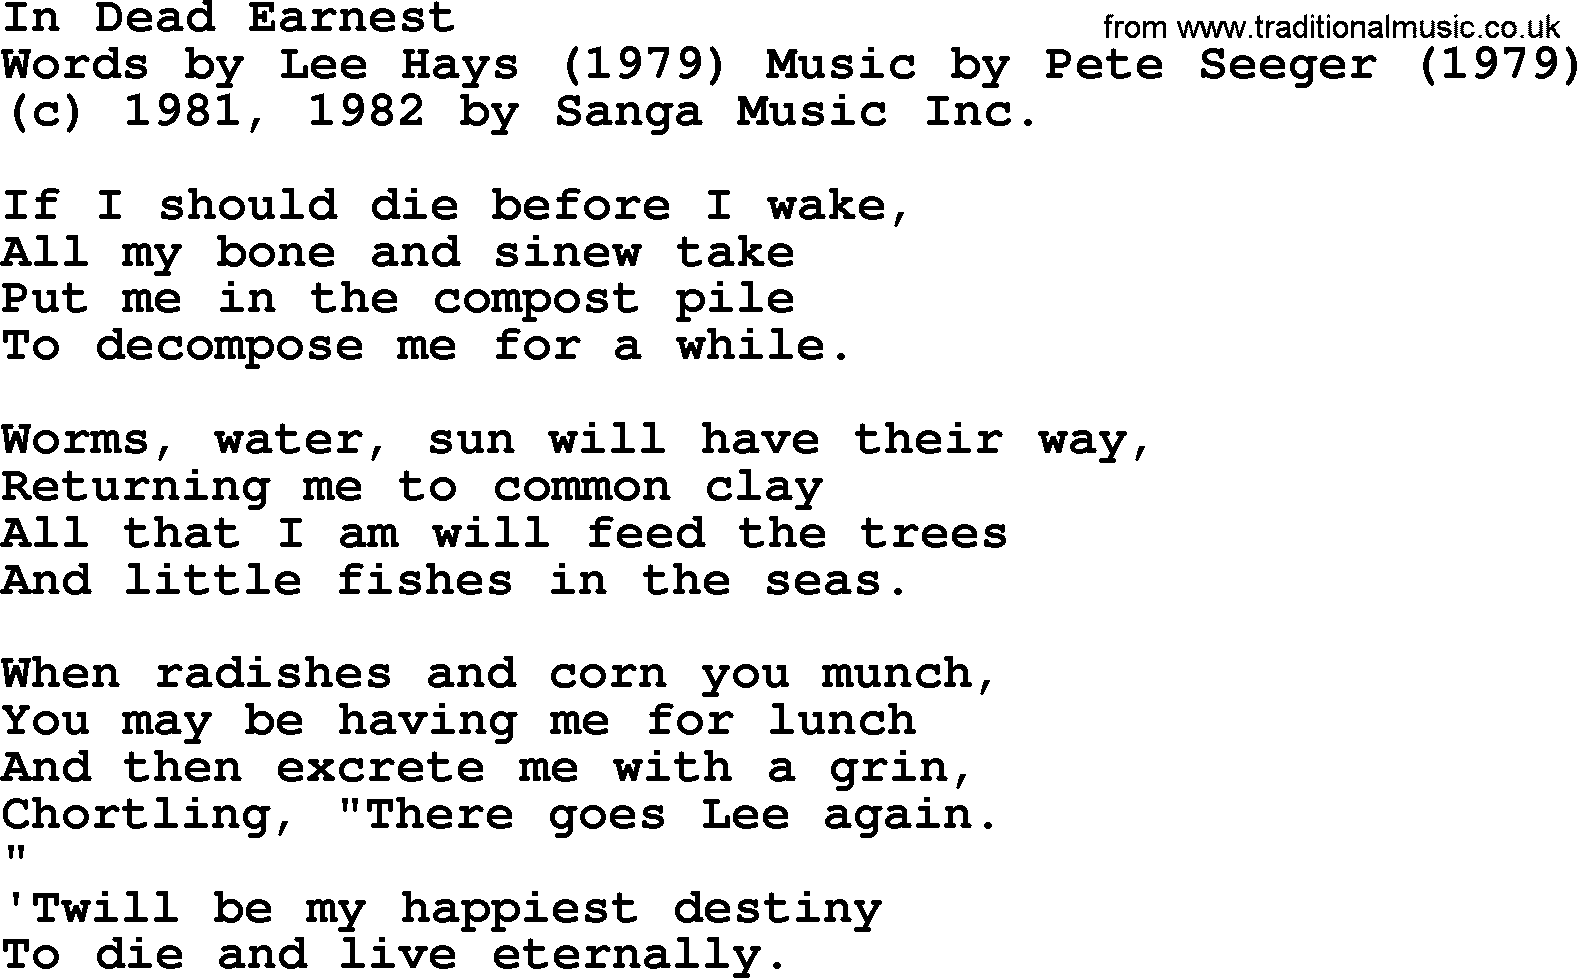 Pete Seeger song In Dead Earnest-Pete-Seeger.txt lyrics